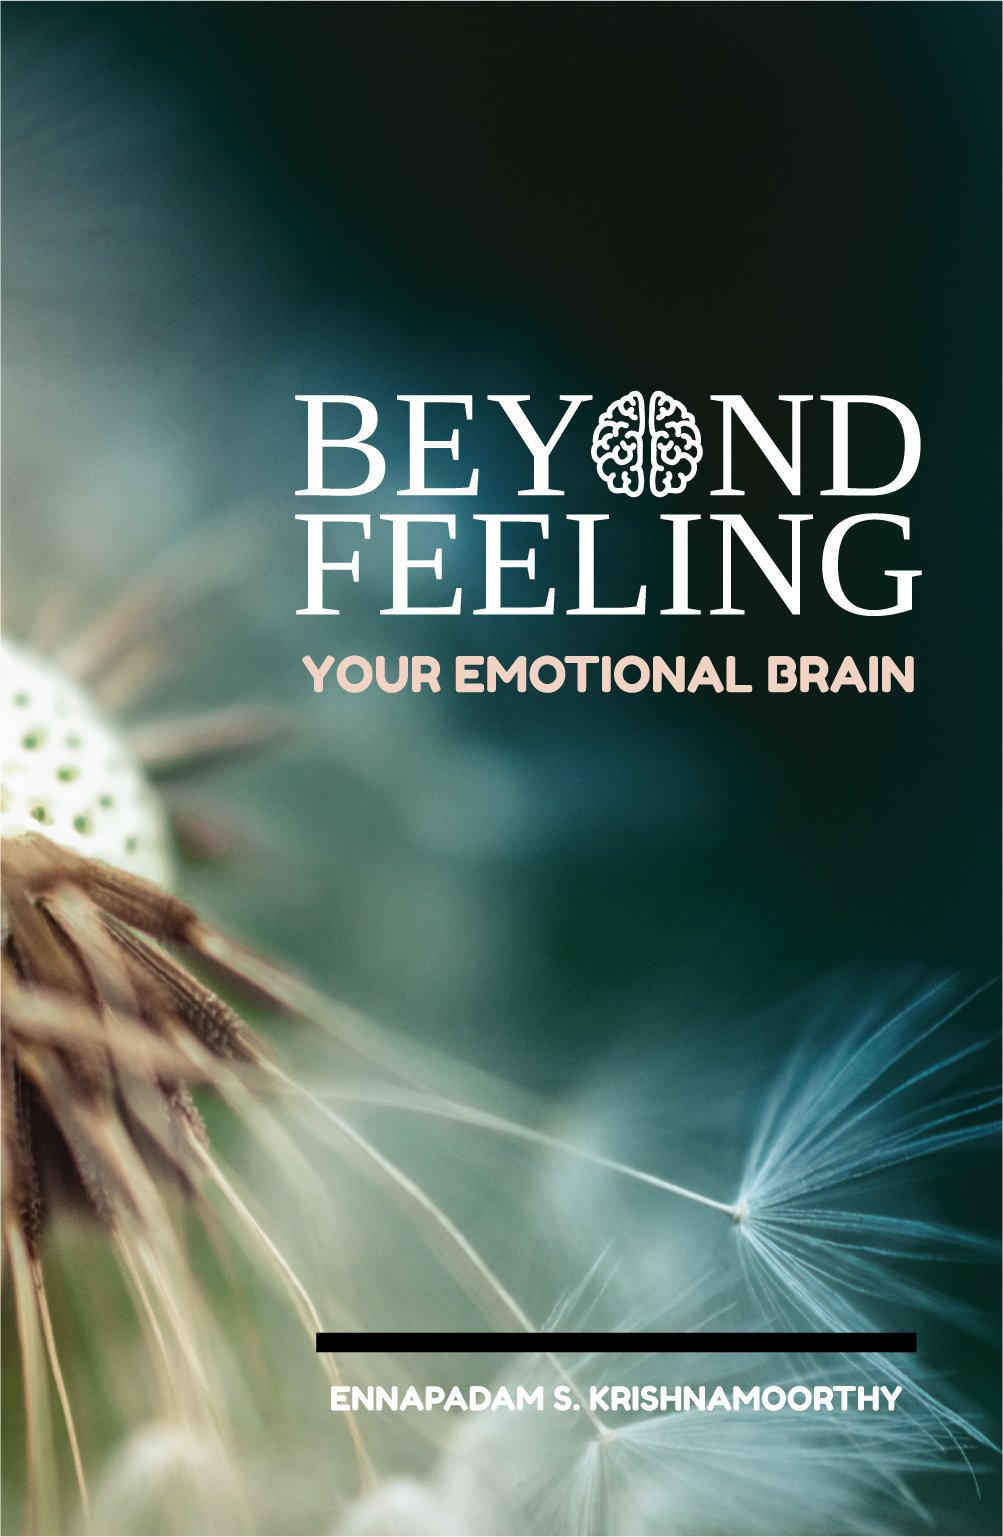 Beyond feeling neurokrish